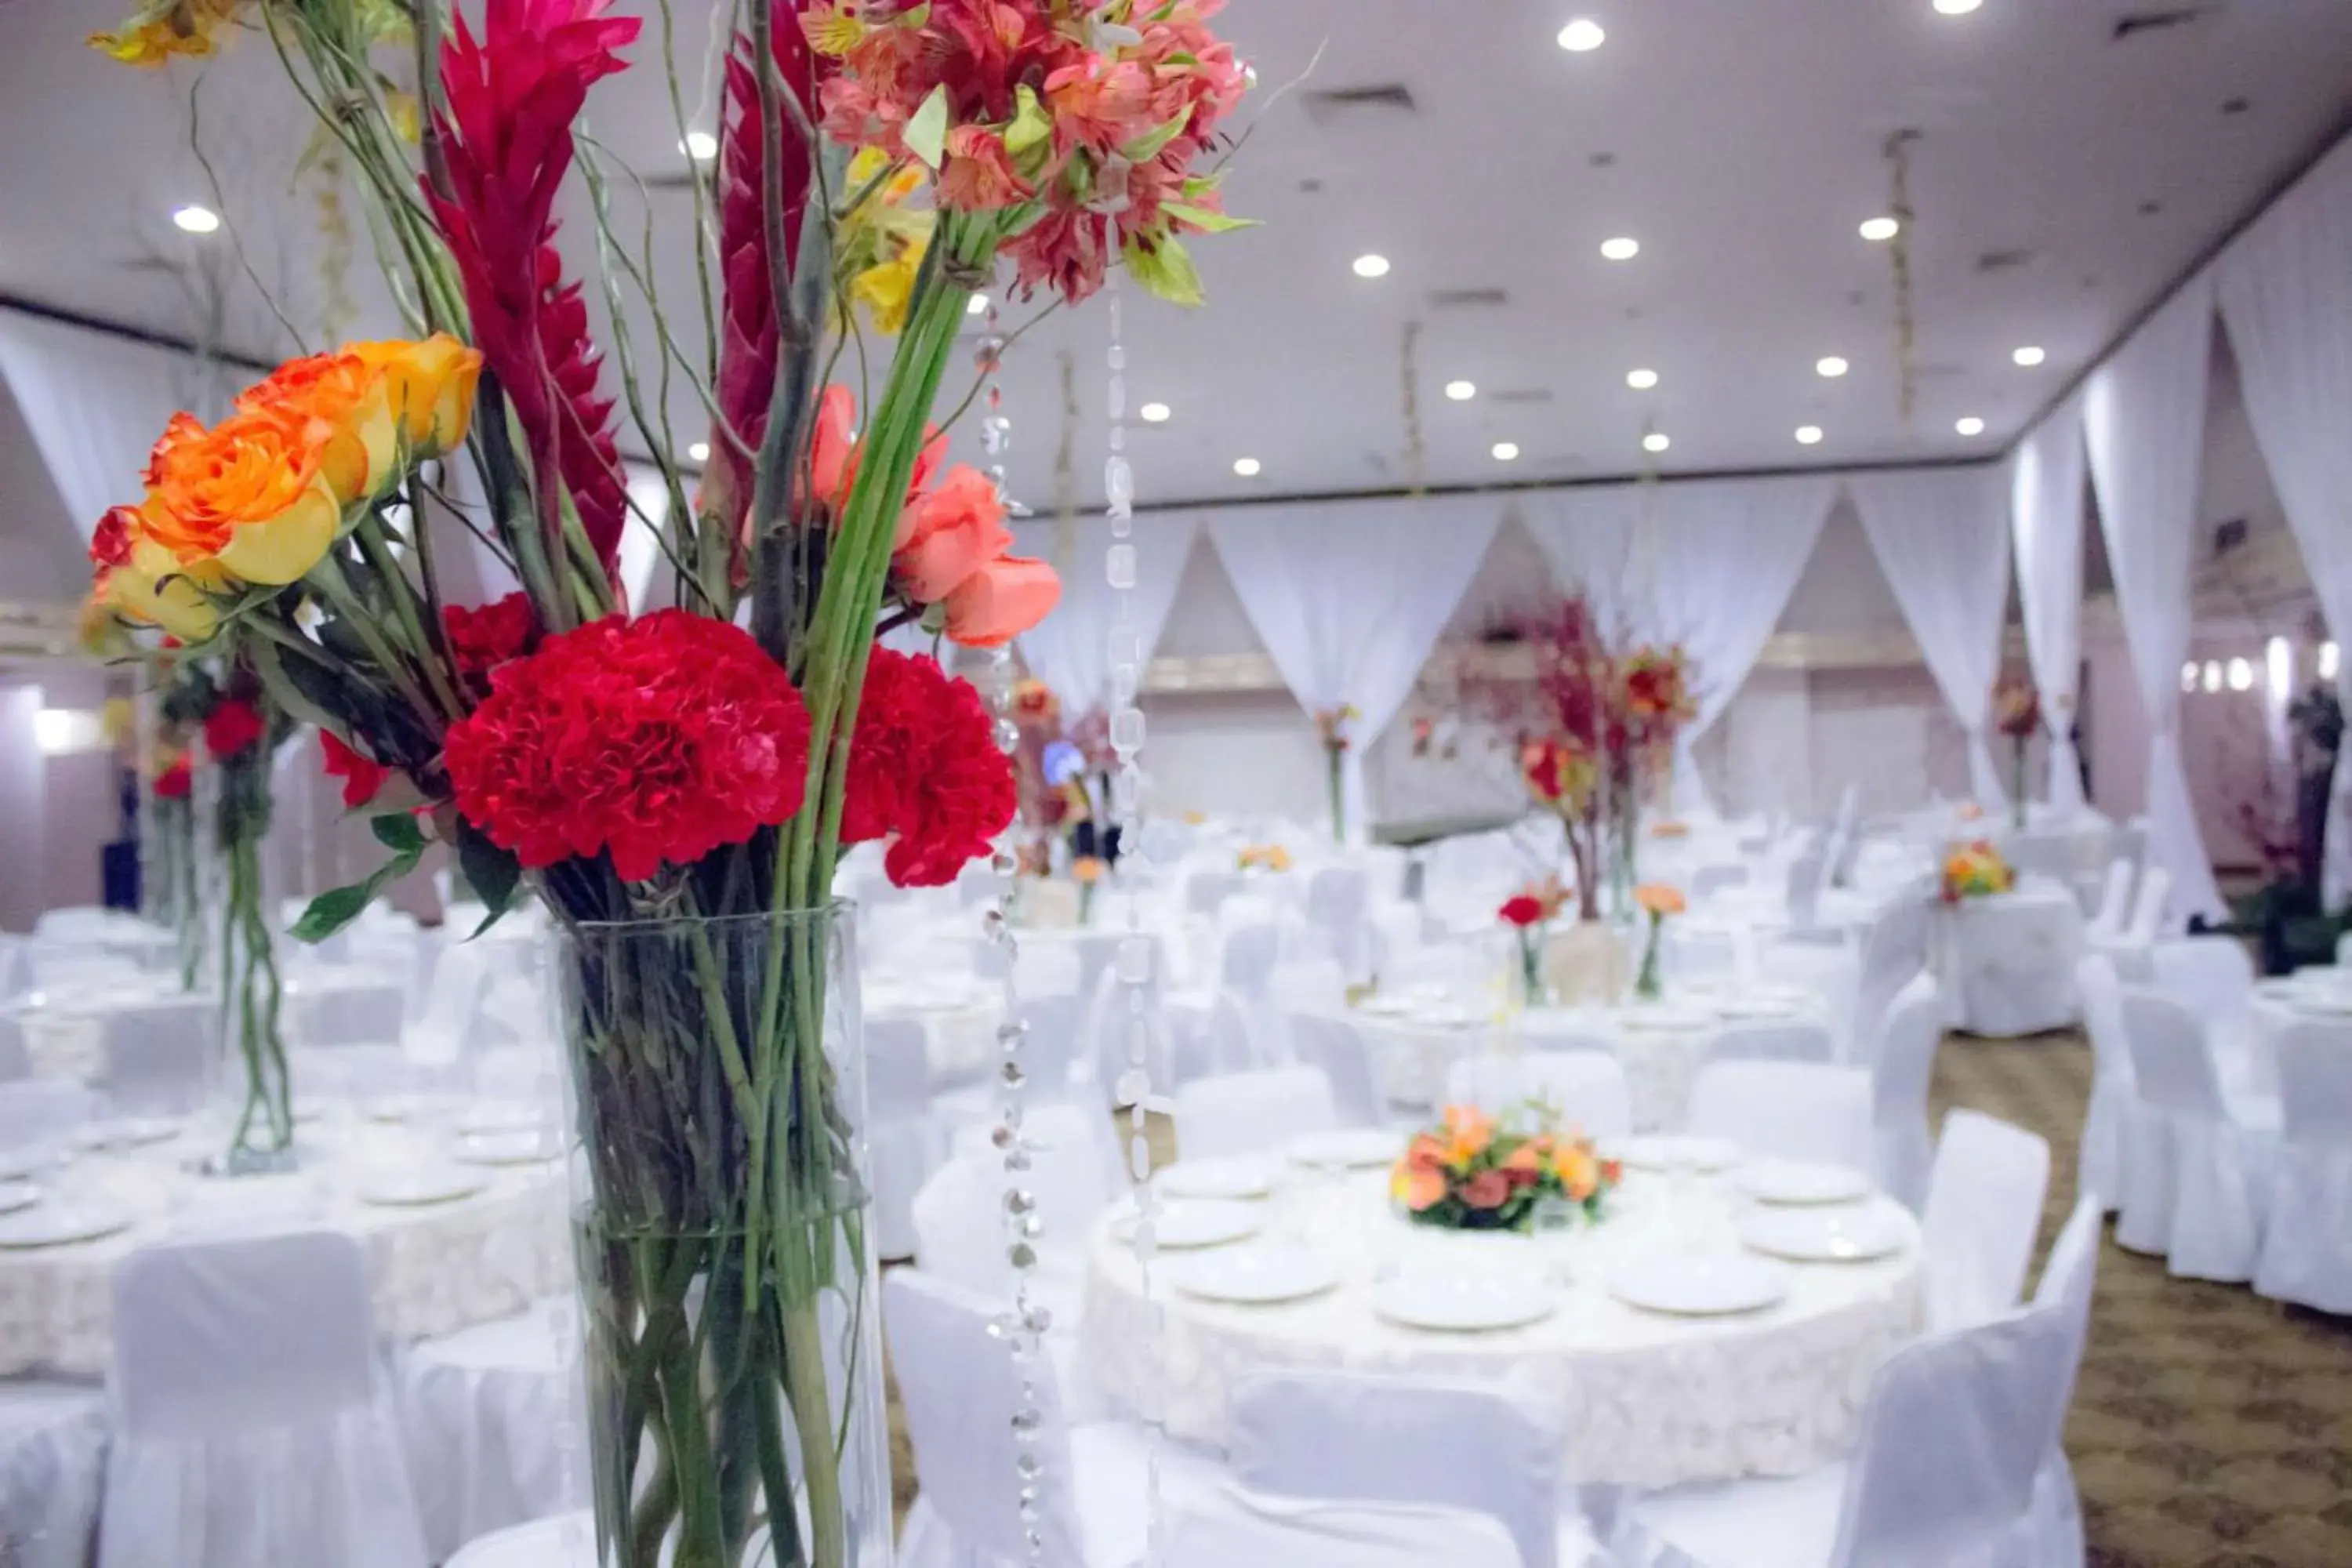 Banquet/Function facilities, Banquet Facilities in HM Mirador